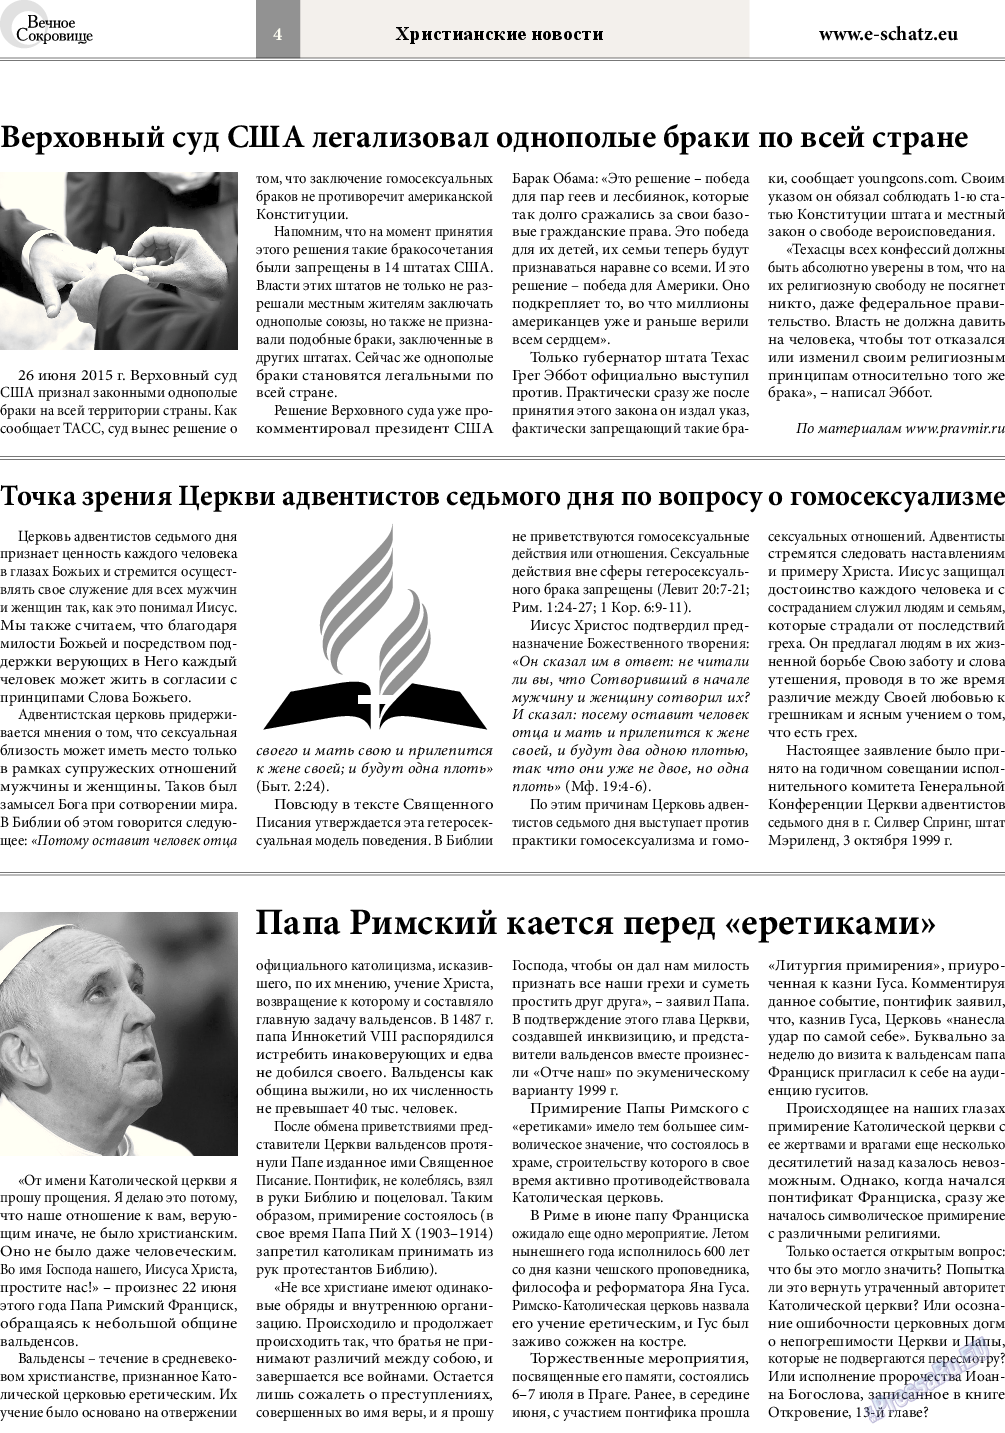 Вечное сокровище, газета. 2015 №4 стр.4